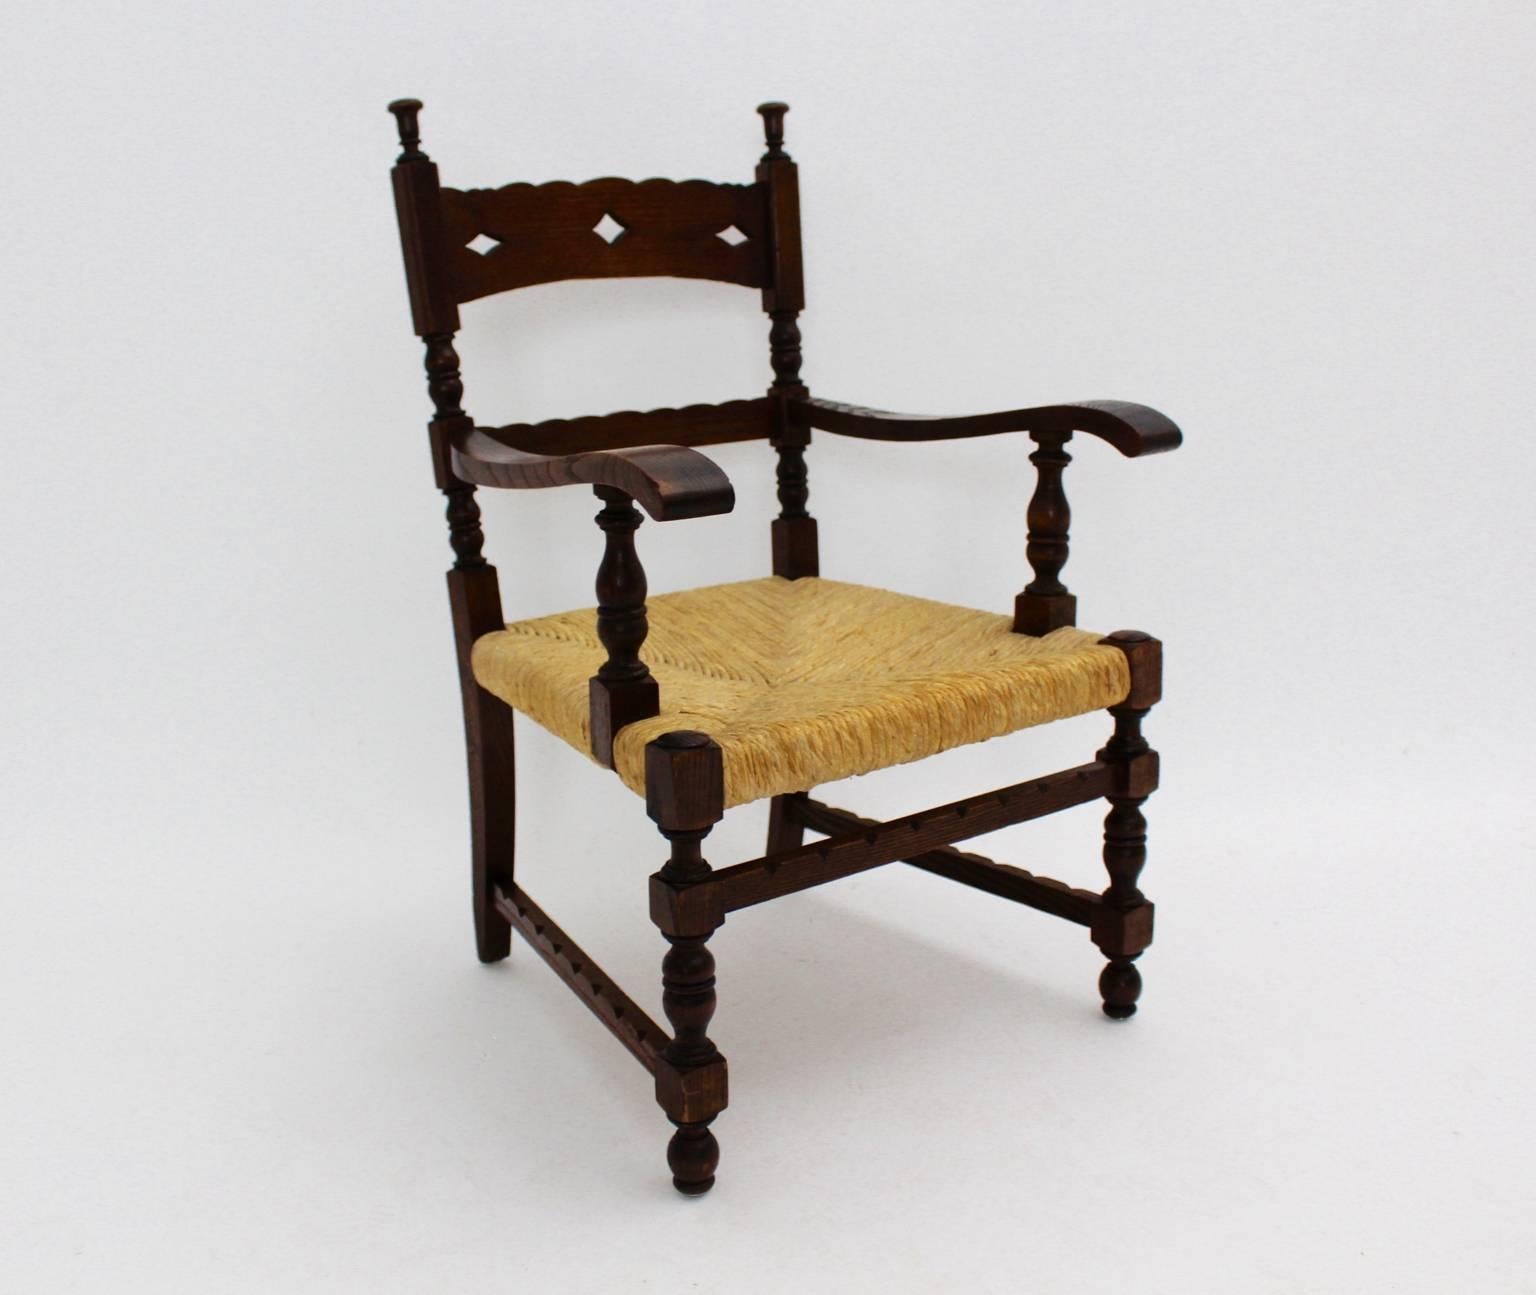 Un merveilleux fauteuil de l'ère Art Déco conçu par Oskar Strnad attribué à Vienne en Autriche, vers 1925.
Bois de frêne massif sculpté et tourné.
Siège tissé en cordon.
Condition très vintage.
2 pièces sont disponibles. Veuillez choisir votre